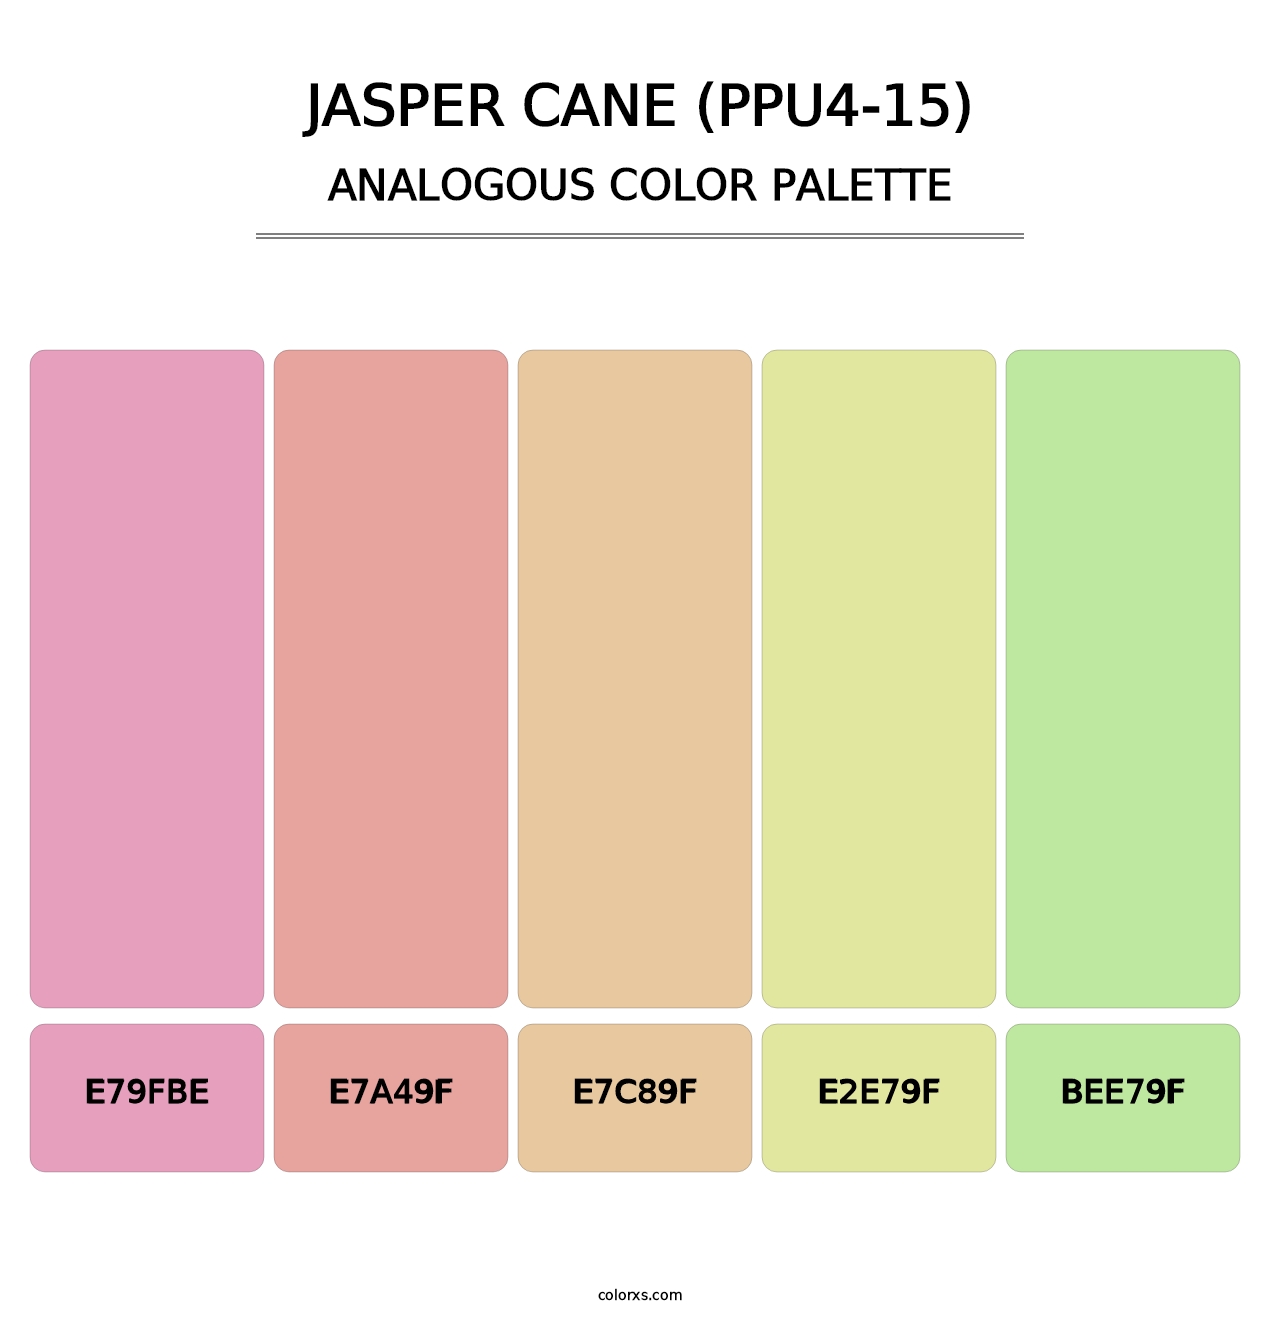 Jasper Cane (PPU4-15) - Analogous Color Palette